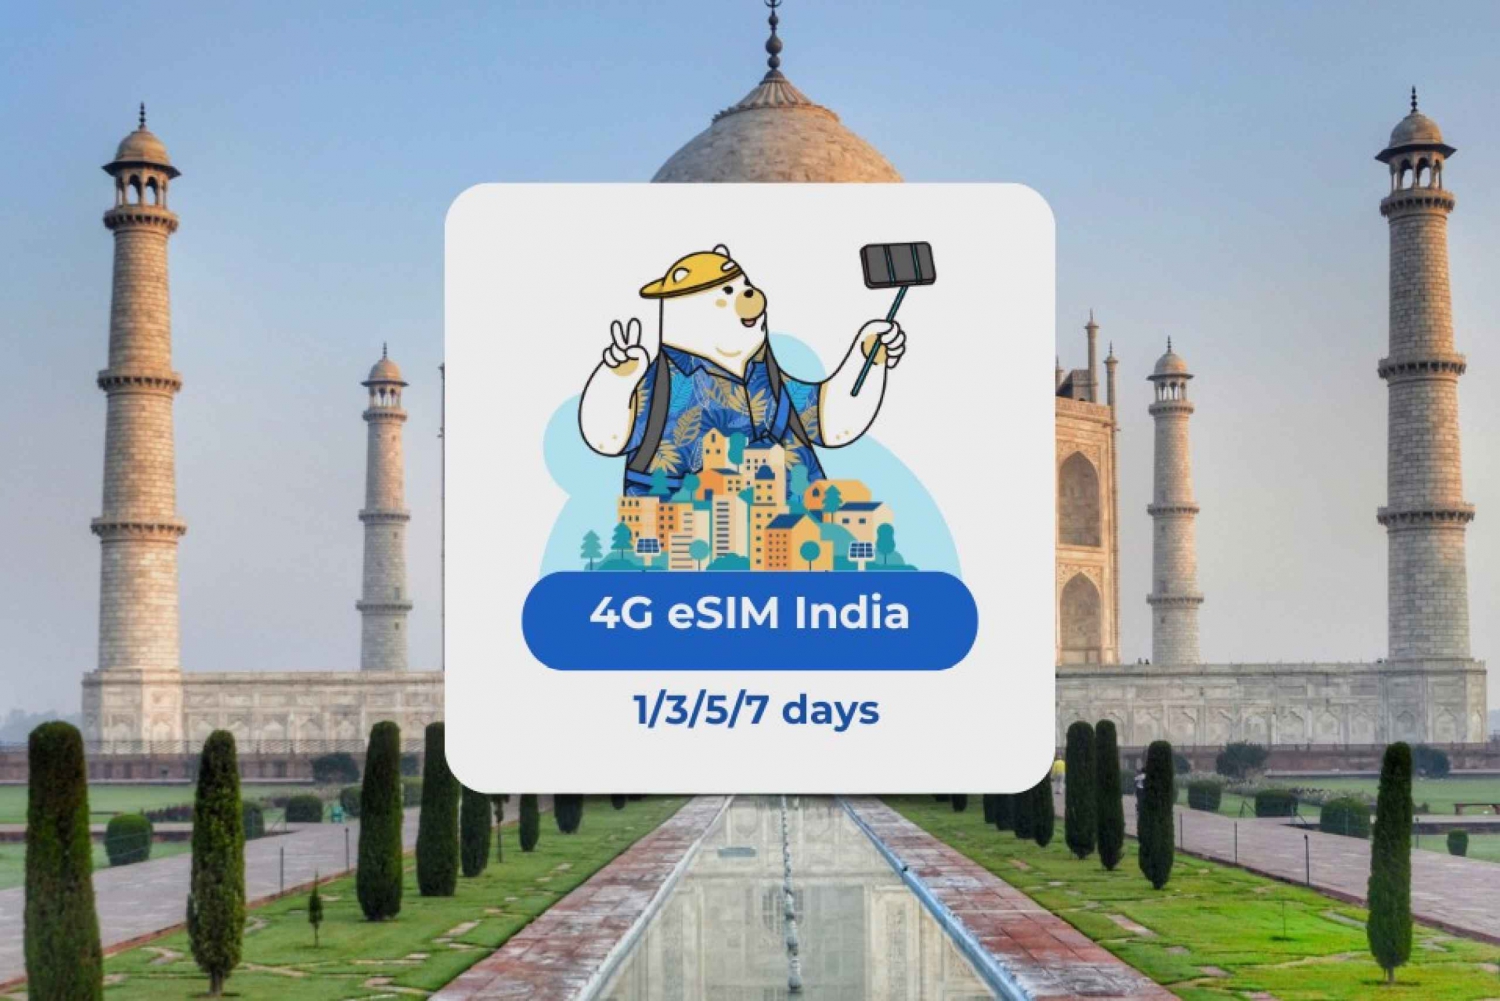 Indie: Mobilny plan transmisji danych eSIM - 1/3/5/7 dni